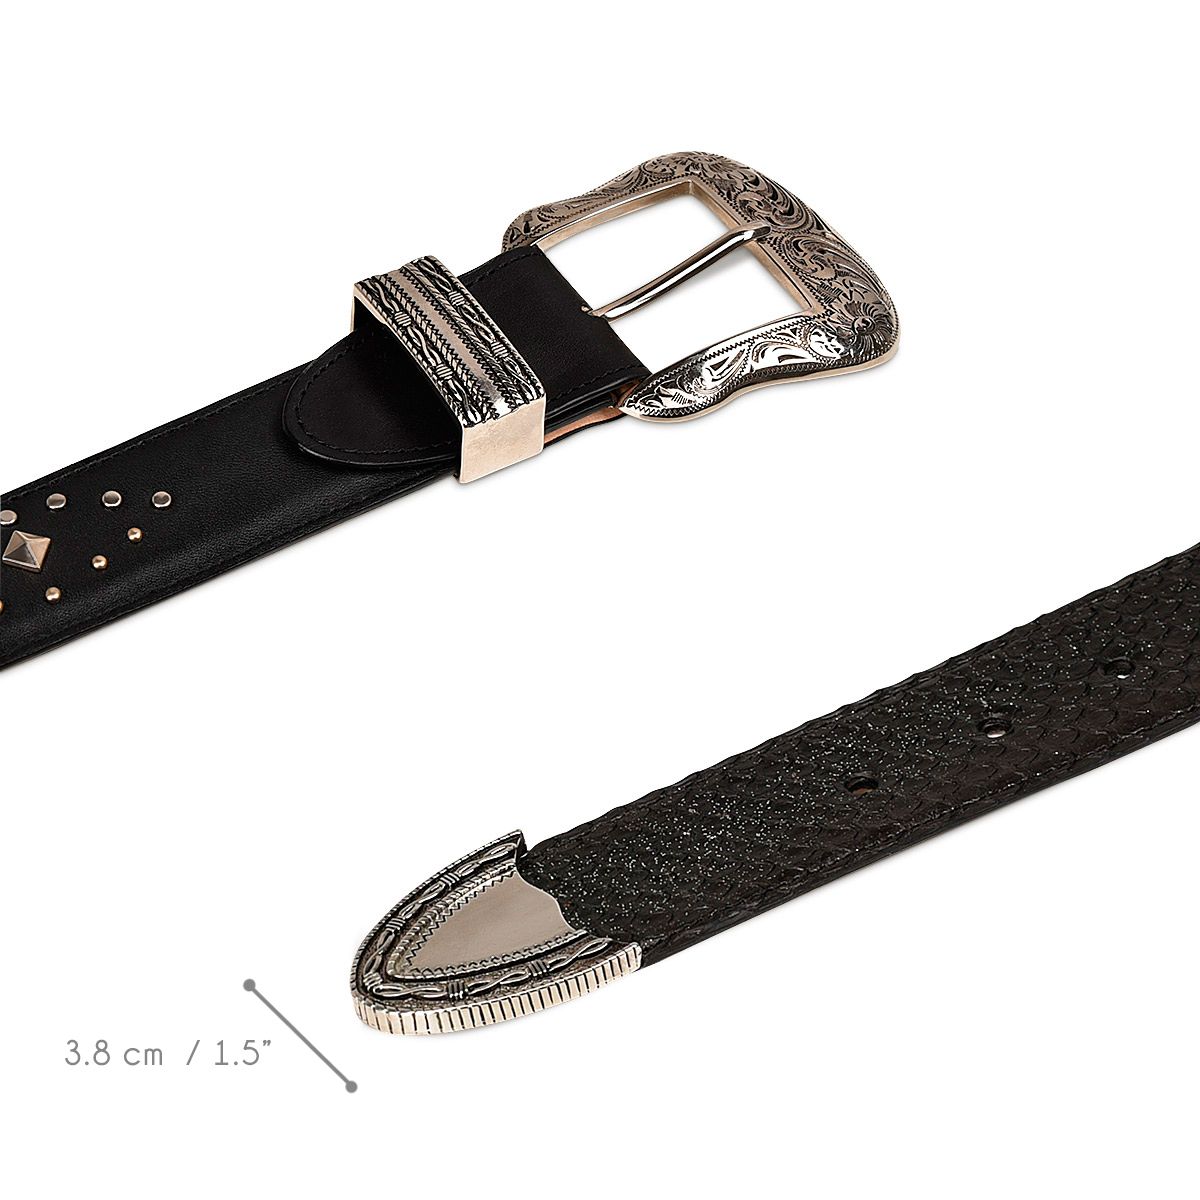 CDA06PM - Cuadra black western cowgirl python belt for women.-CUADRA-Kuet-Cuadra-Boots